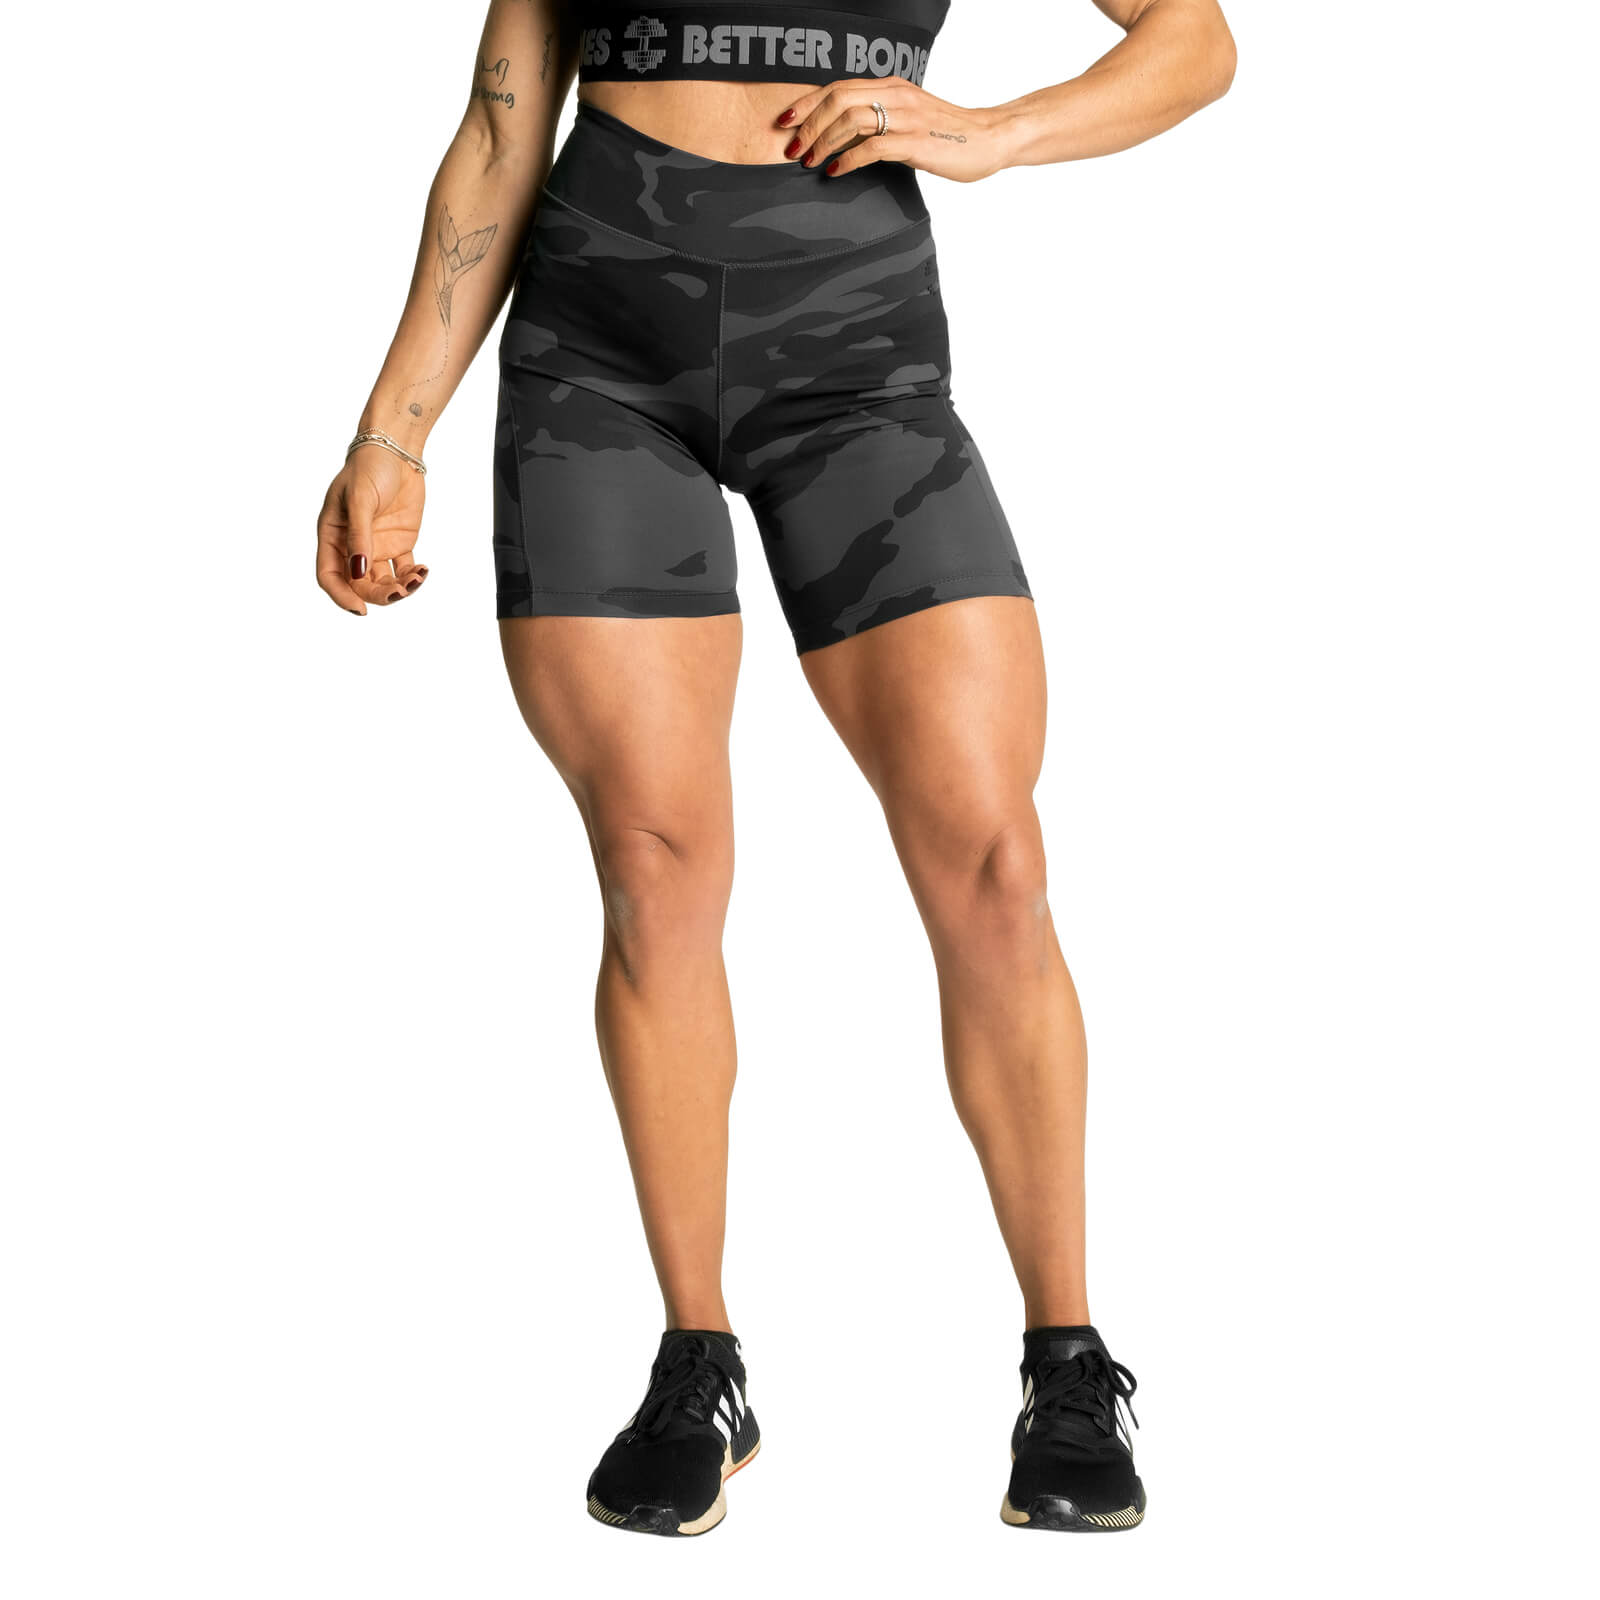 Kolla High Waist Shorts, dark camo, Better Bodies hos SportGymButiken.se